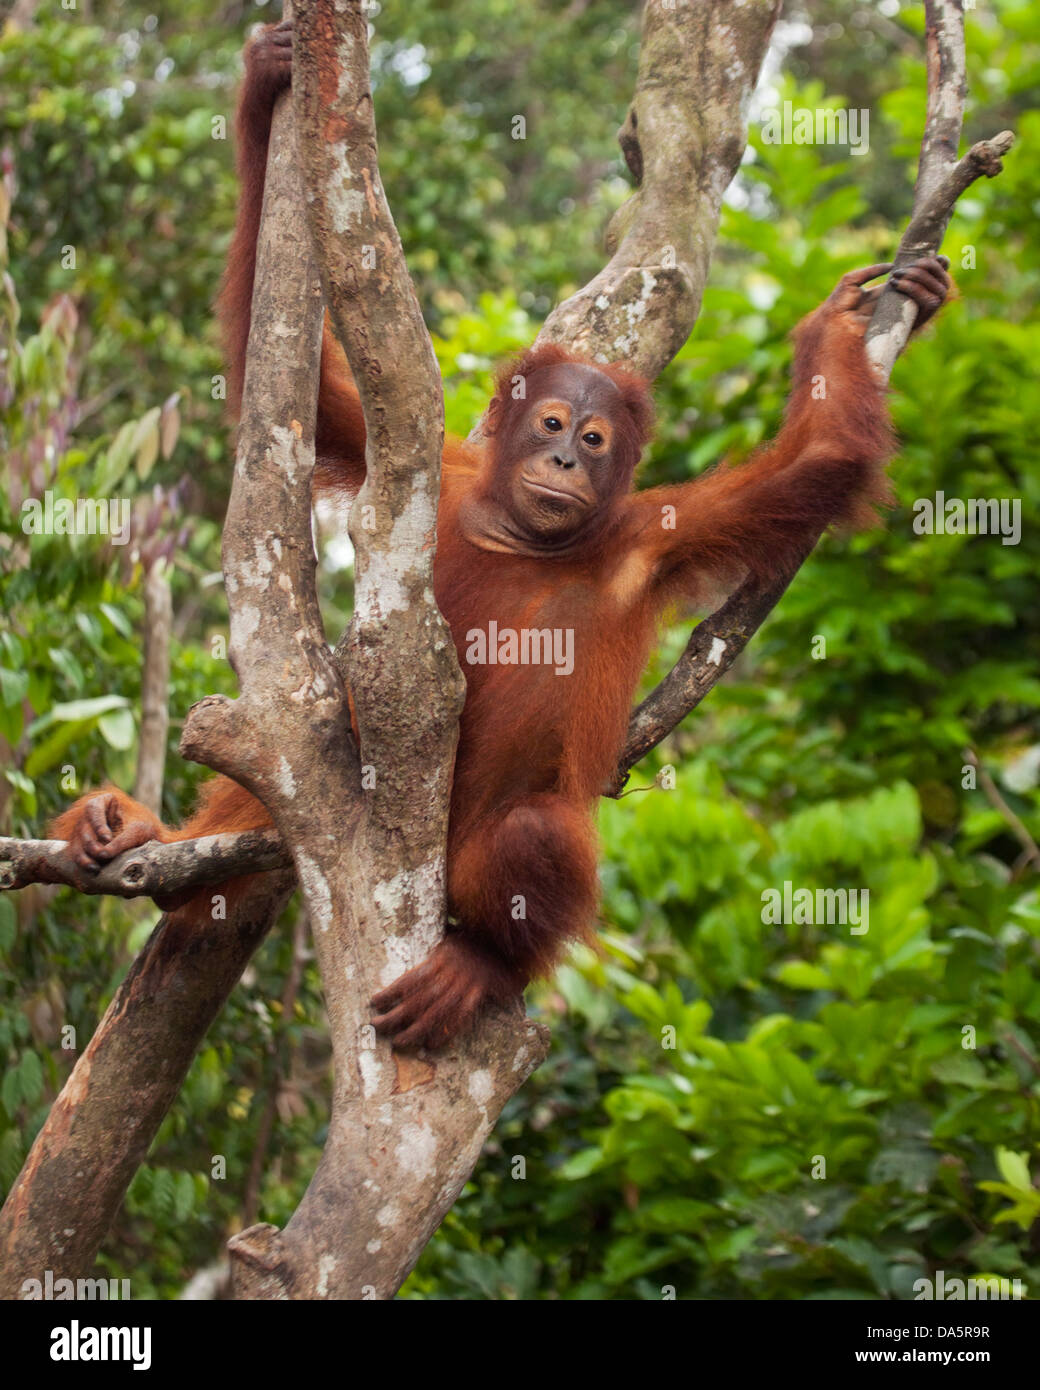 Orangutan sauvage de Bornean (Pongo pygmaeus) assis sur un arbre dans la forêt tropicale de Bornean. Espèces en danger critique d'extinction Banque D'Images